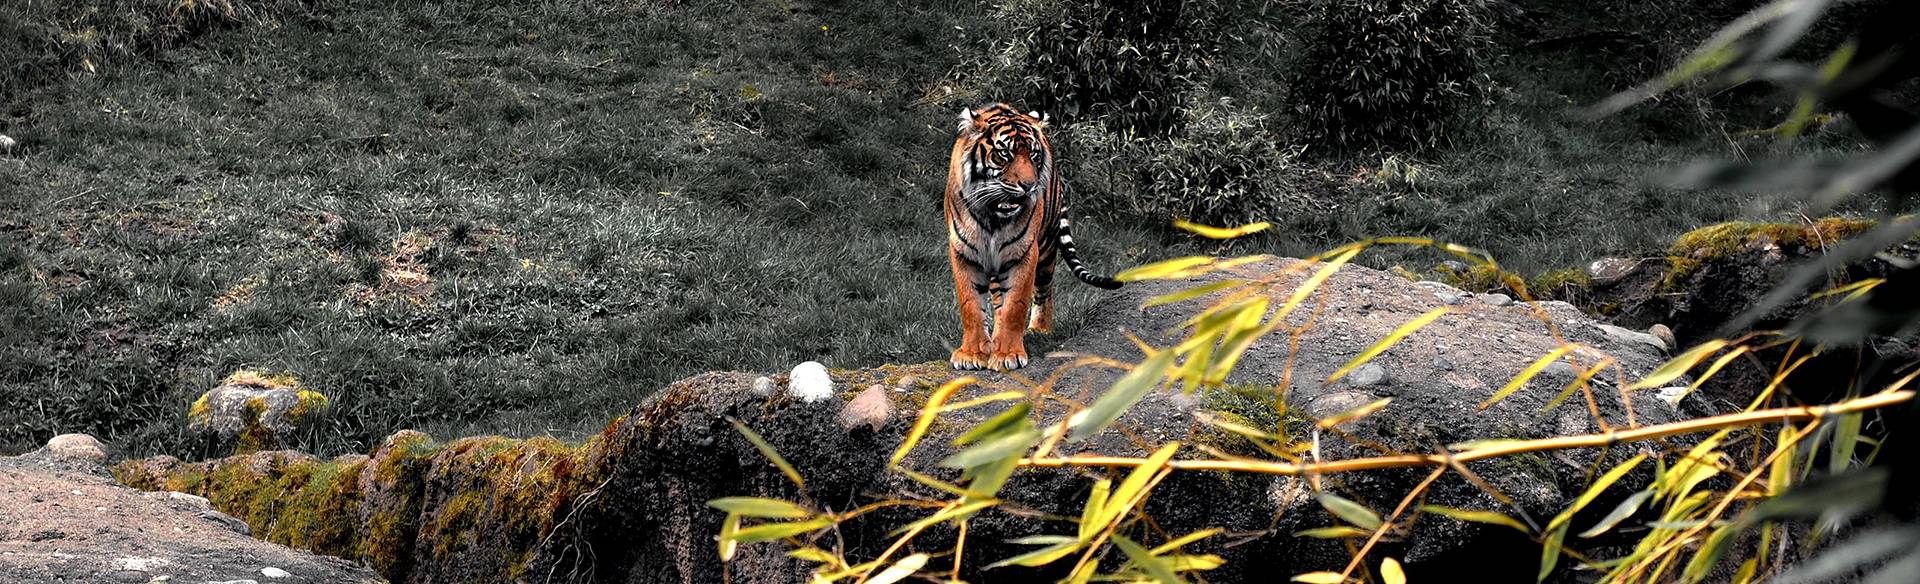 Tigre surplombant le paysage depuis un rocher